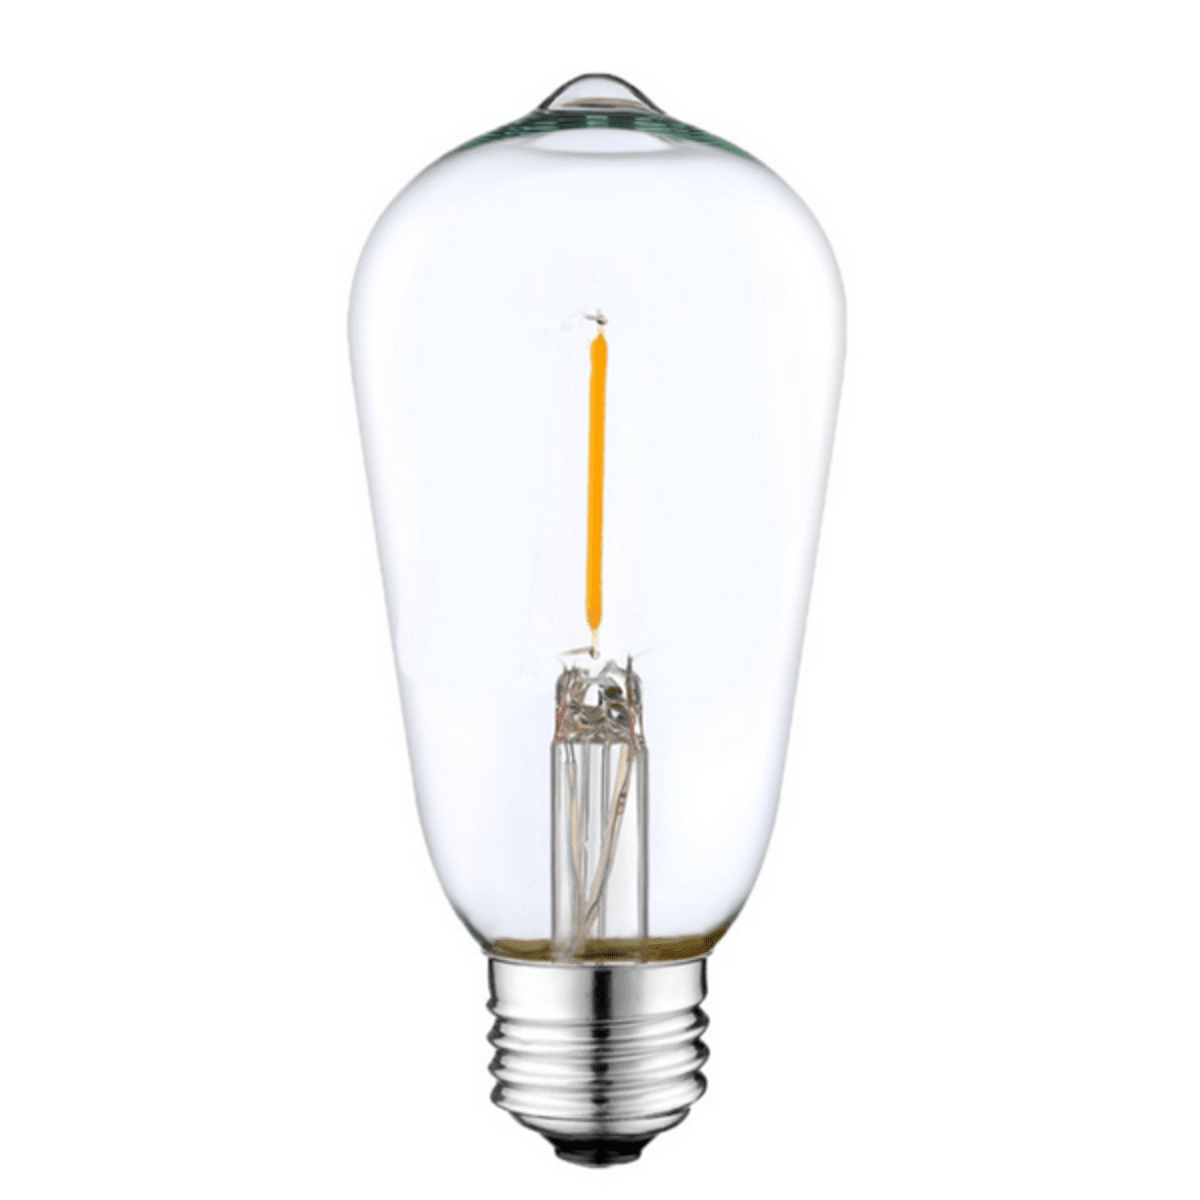 Litehouse LED Bulb Replacement for Solar Festoon Bulb String Lights